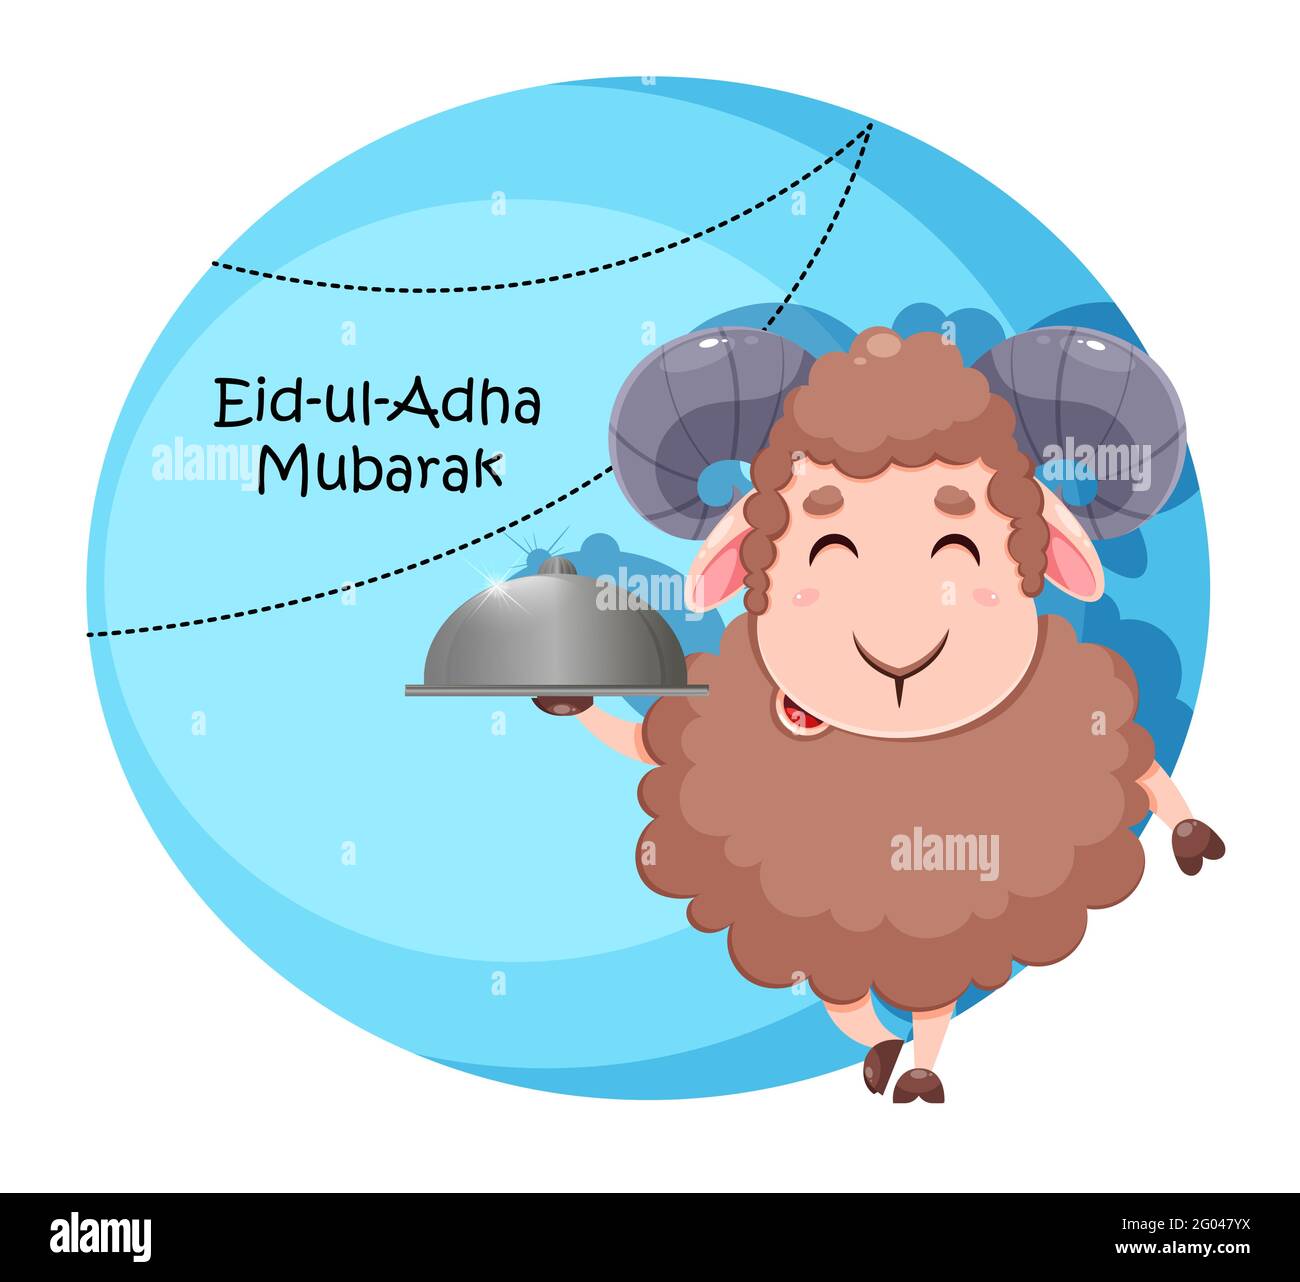 Biglietto d'auguri EID al Adha Mubarak. Cartoon pecora sacrificale per la celebrazione della festa musulmana tradizionale. Divertente personaggio RAM. Vettore stock ill Illustrazione Vettoriale